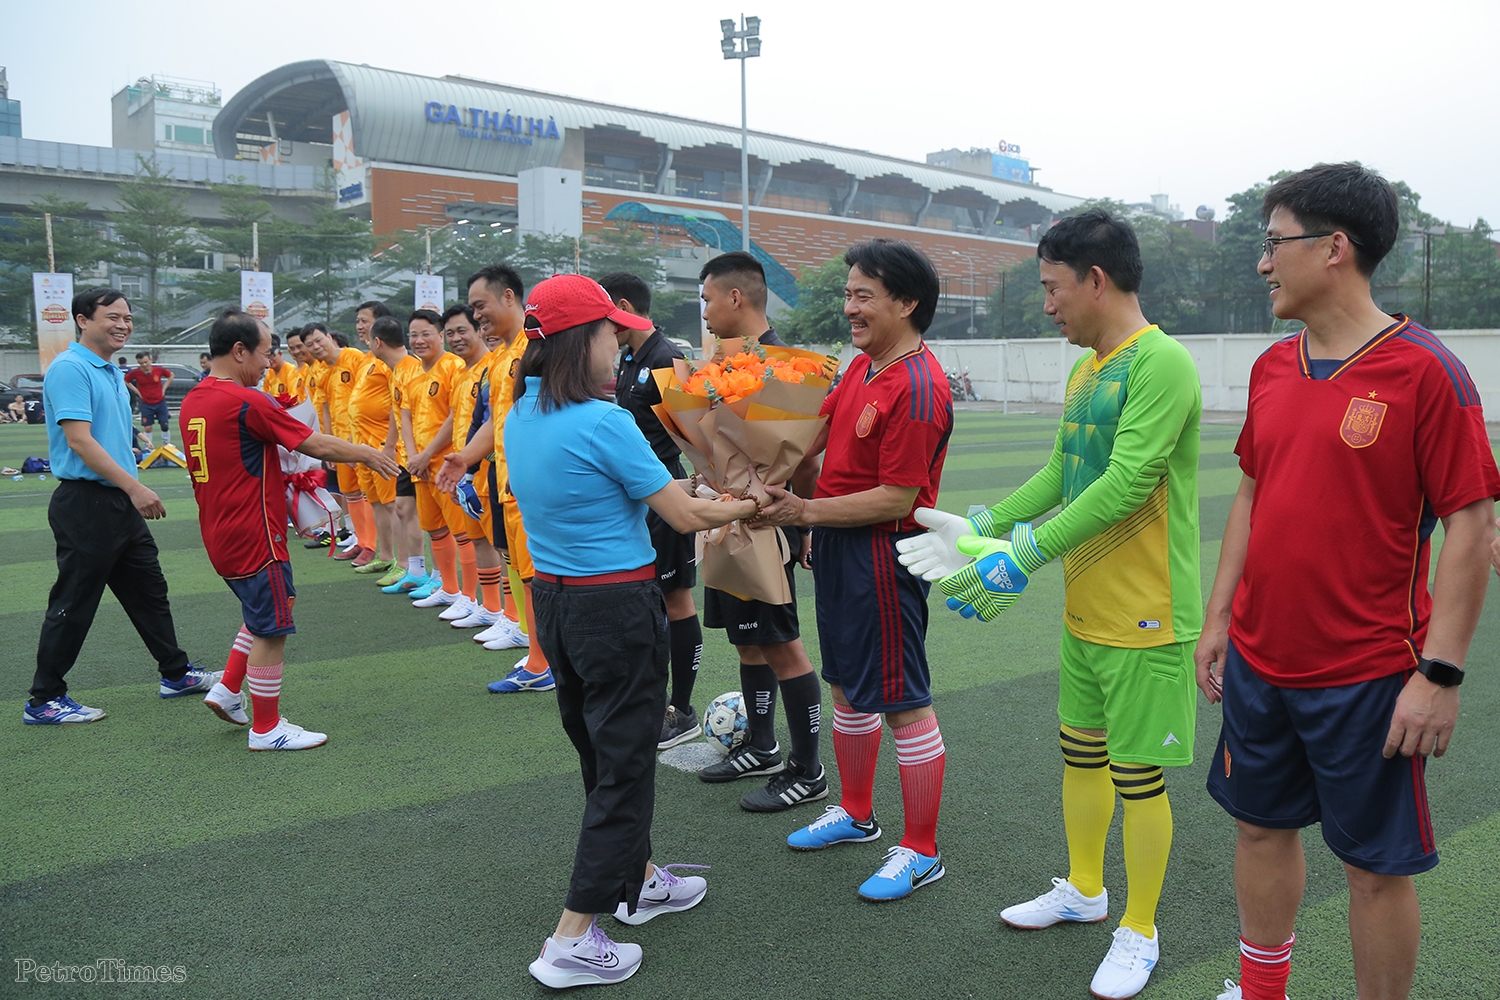 Lãnh đạo Tập đoàn và các đơn vị thành viên giao hữu bóng đá nhân kỷ niệm Ngày truyền thống ngành Dầu khí Việt Nam